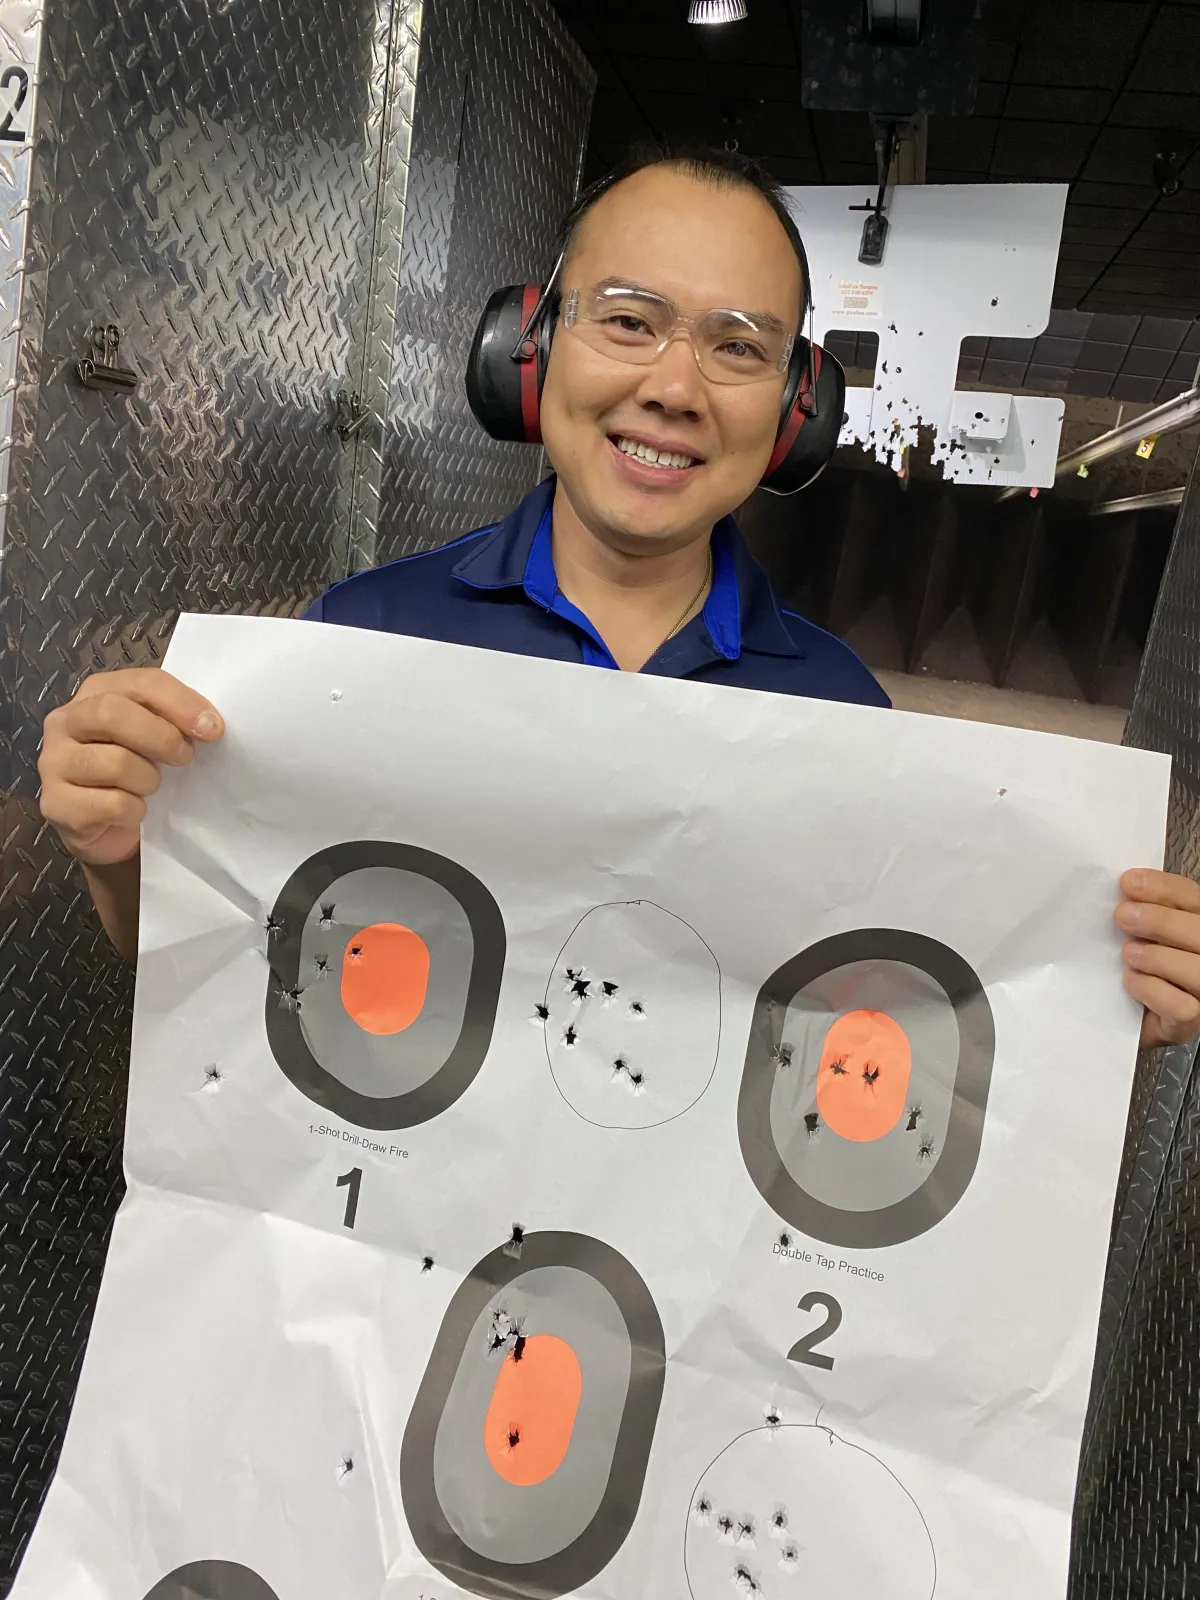 Male student holding target at gun range